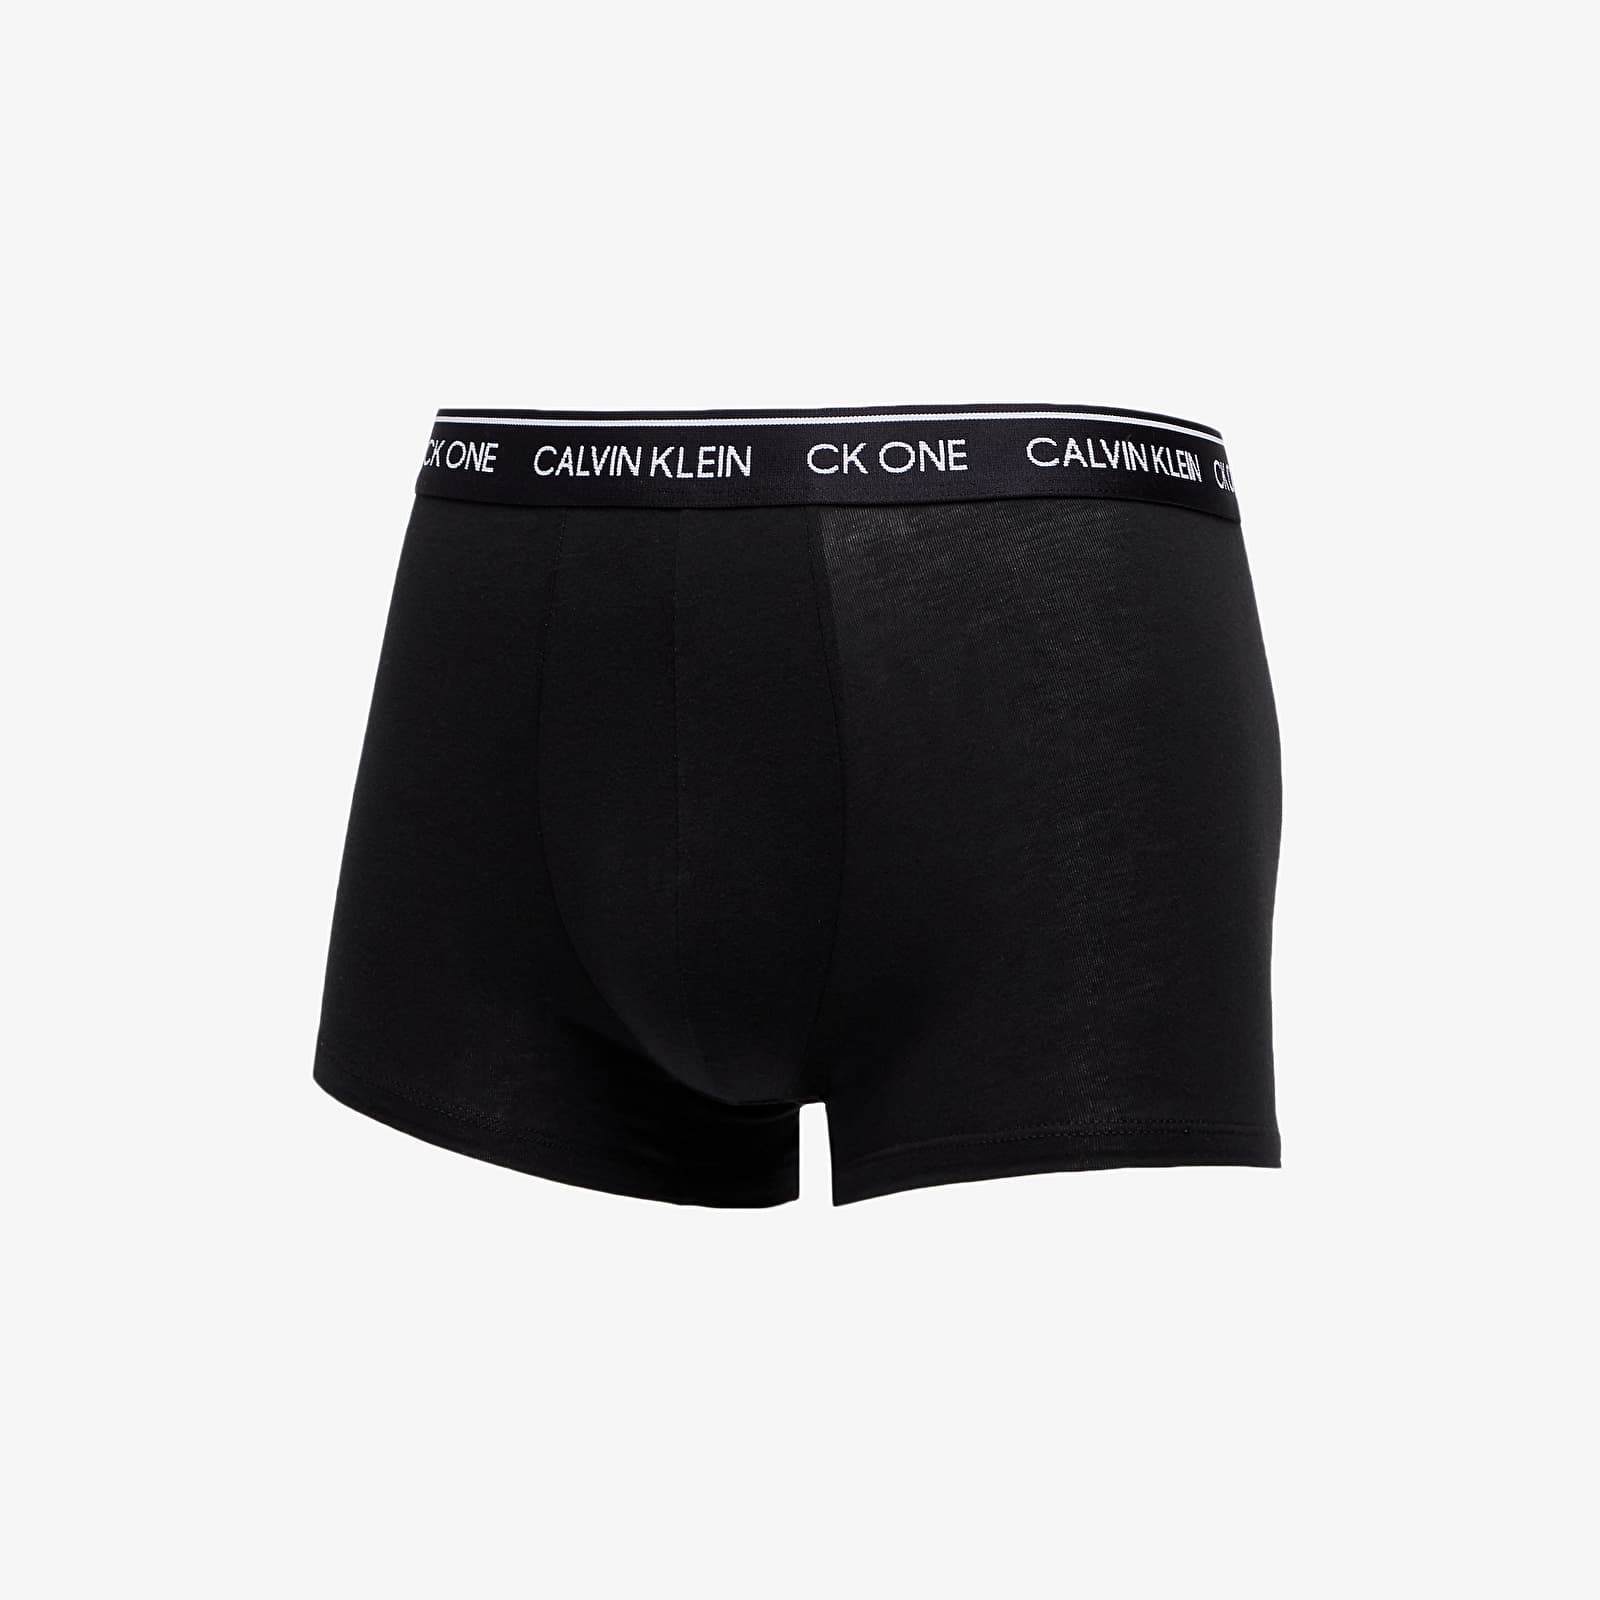 Boxer shorts Calvin Klein Trunks 1-Pack Black